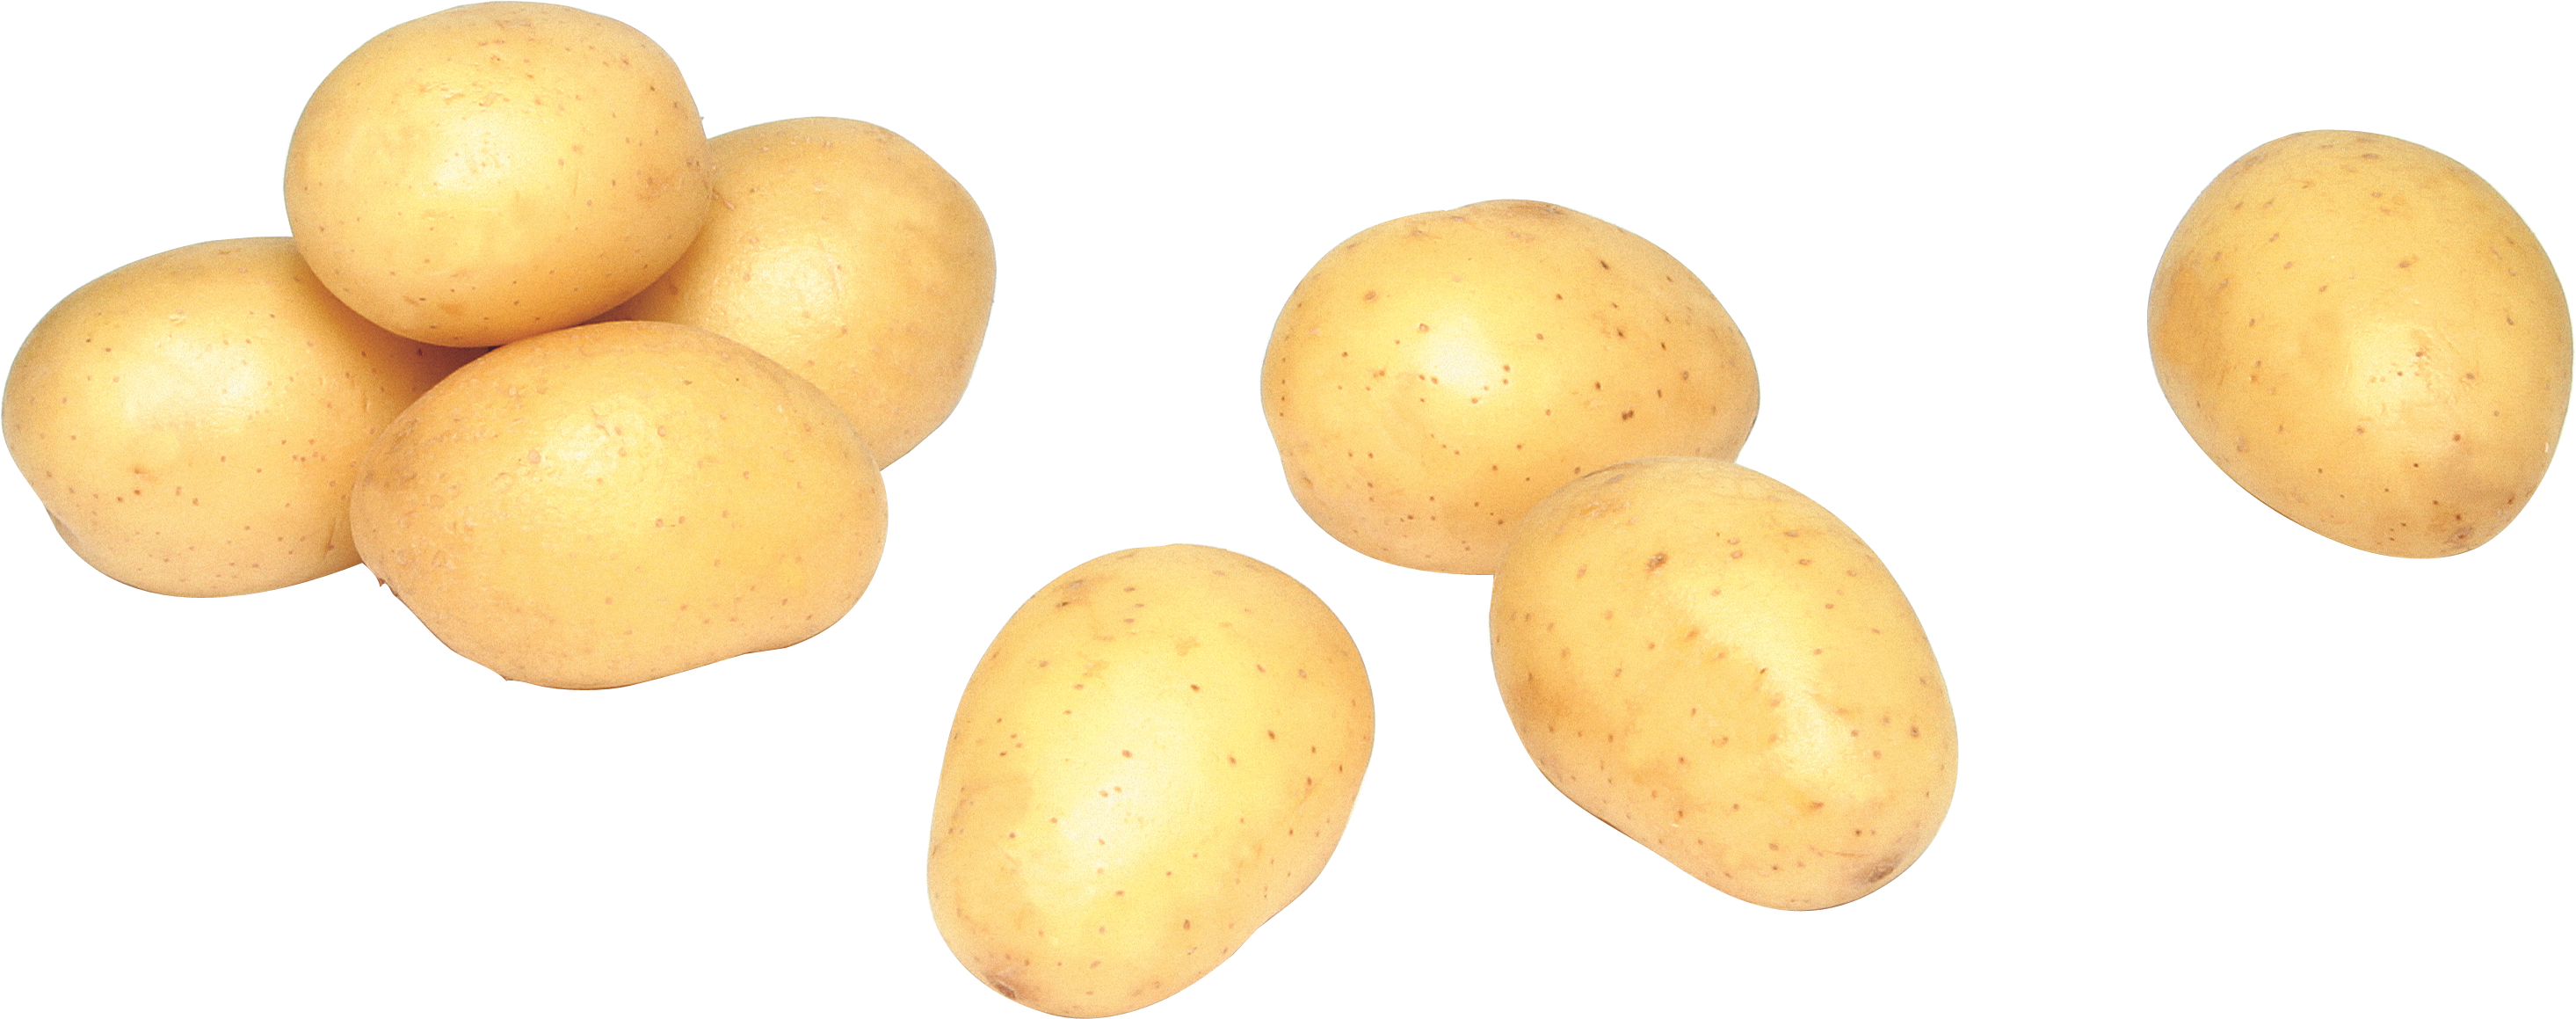 Mały ziemniak